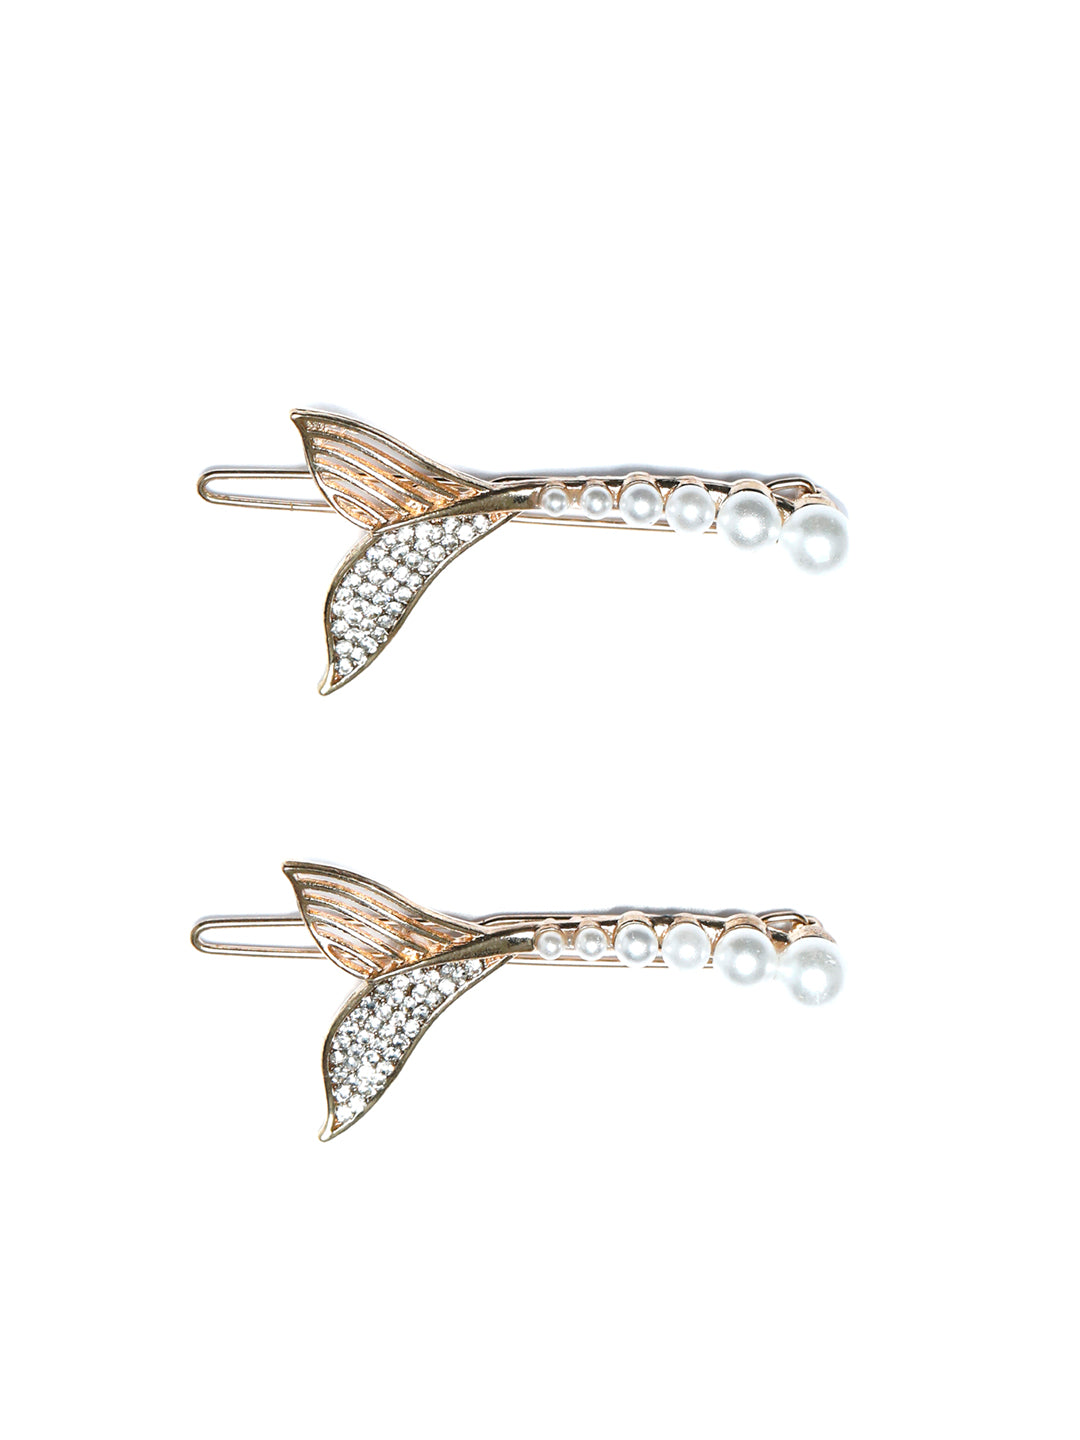 White Pearl Fish Tail Hair Pin Set